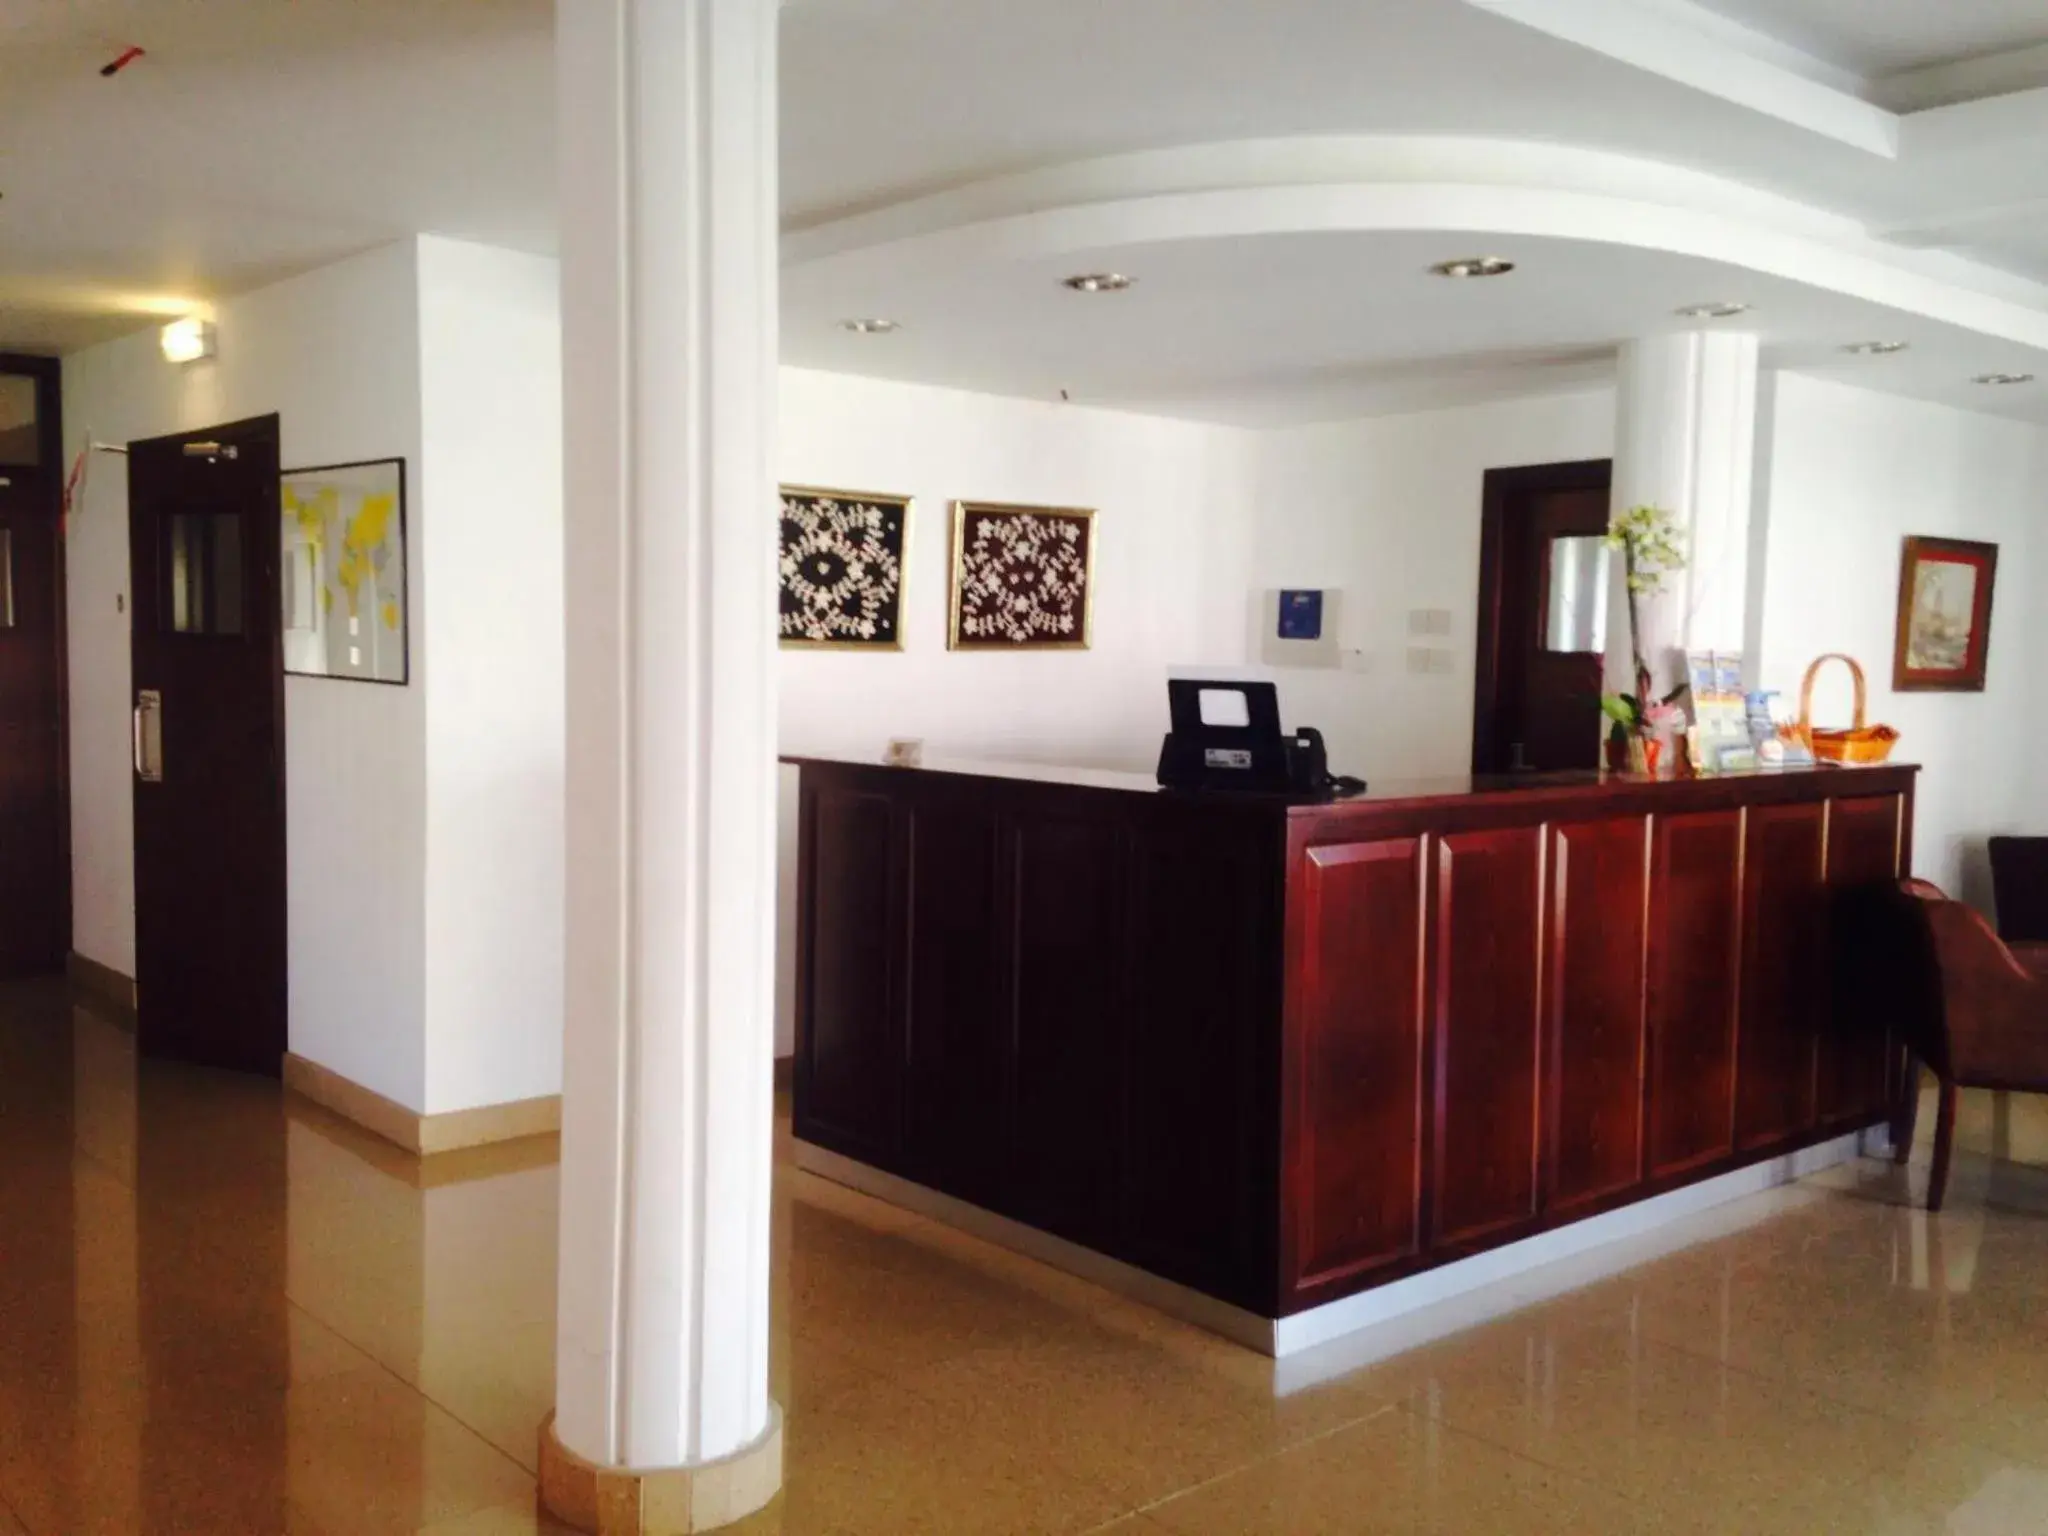 Lobby or reception, Lobby/Reception in Rebioz Hotel